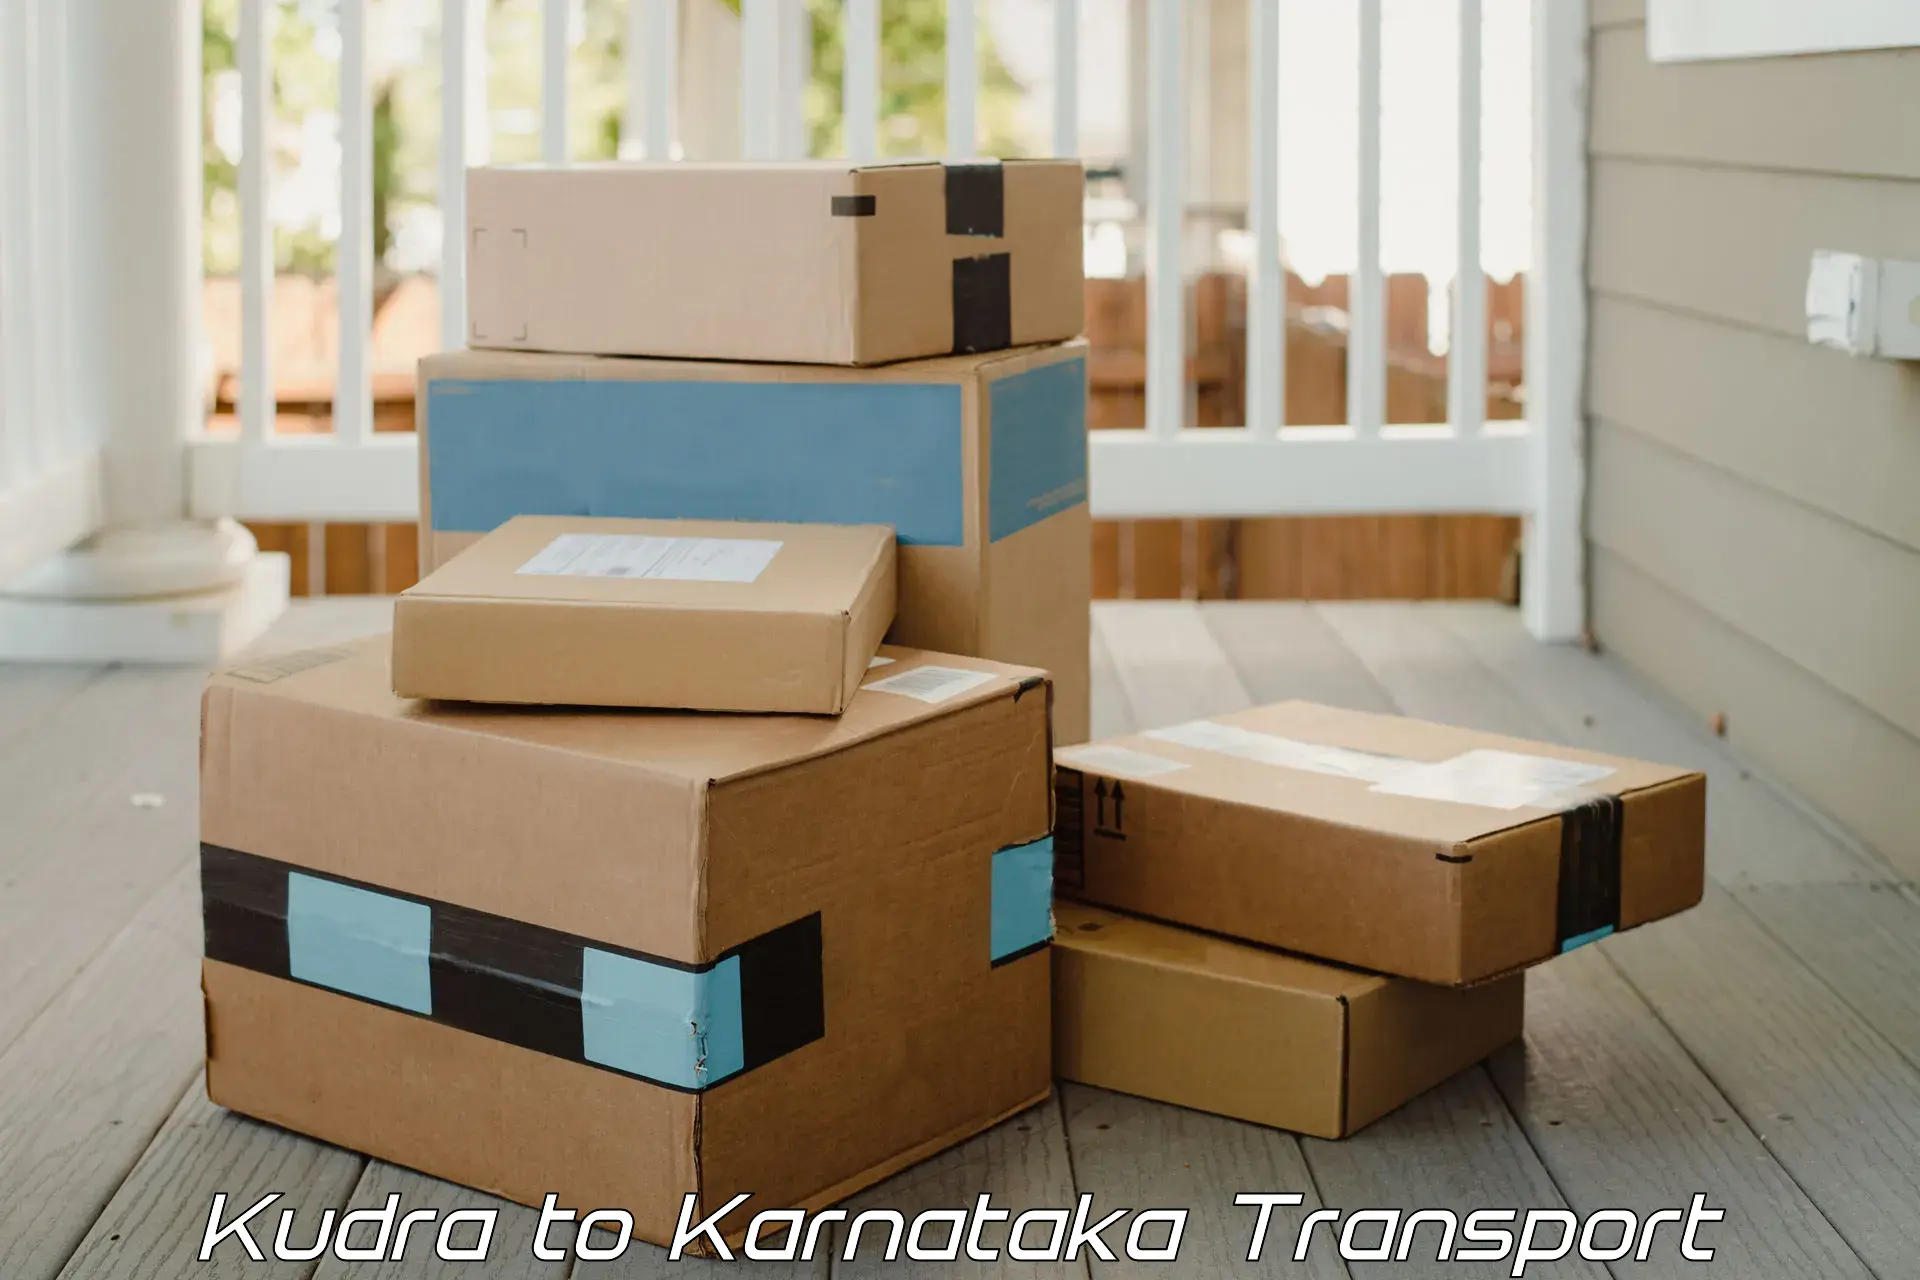 Door to door transport services in Kudra to Karnataka